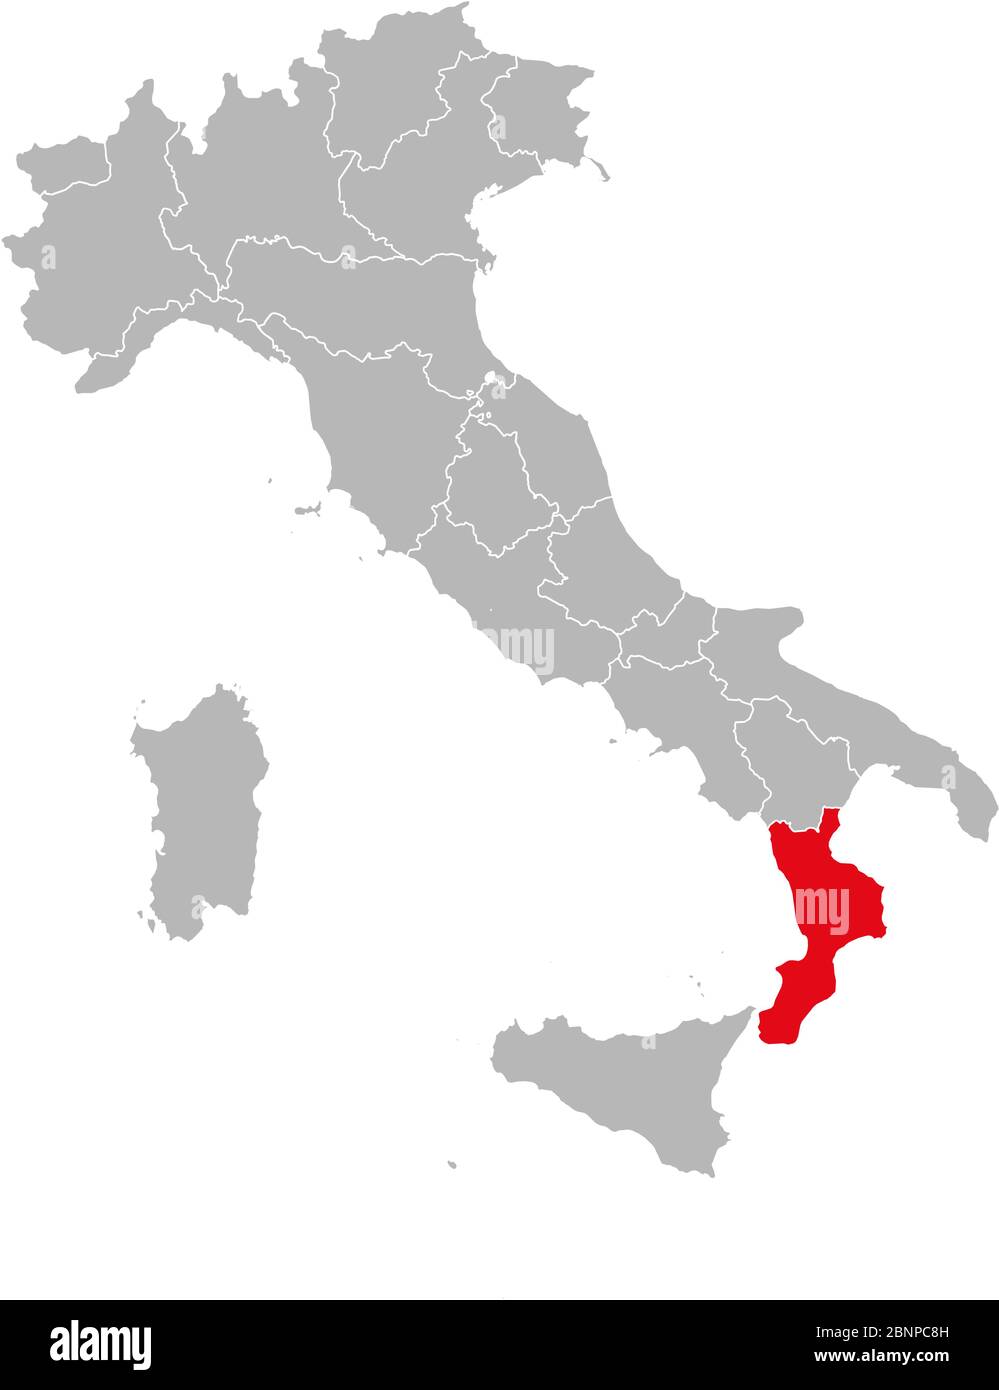 Calabre mis en évidence sur la carte de l'italie. Fond gris. Carte politique italienne. Illustration de Vecteur